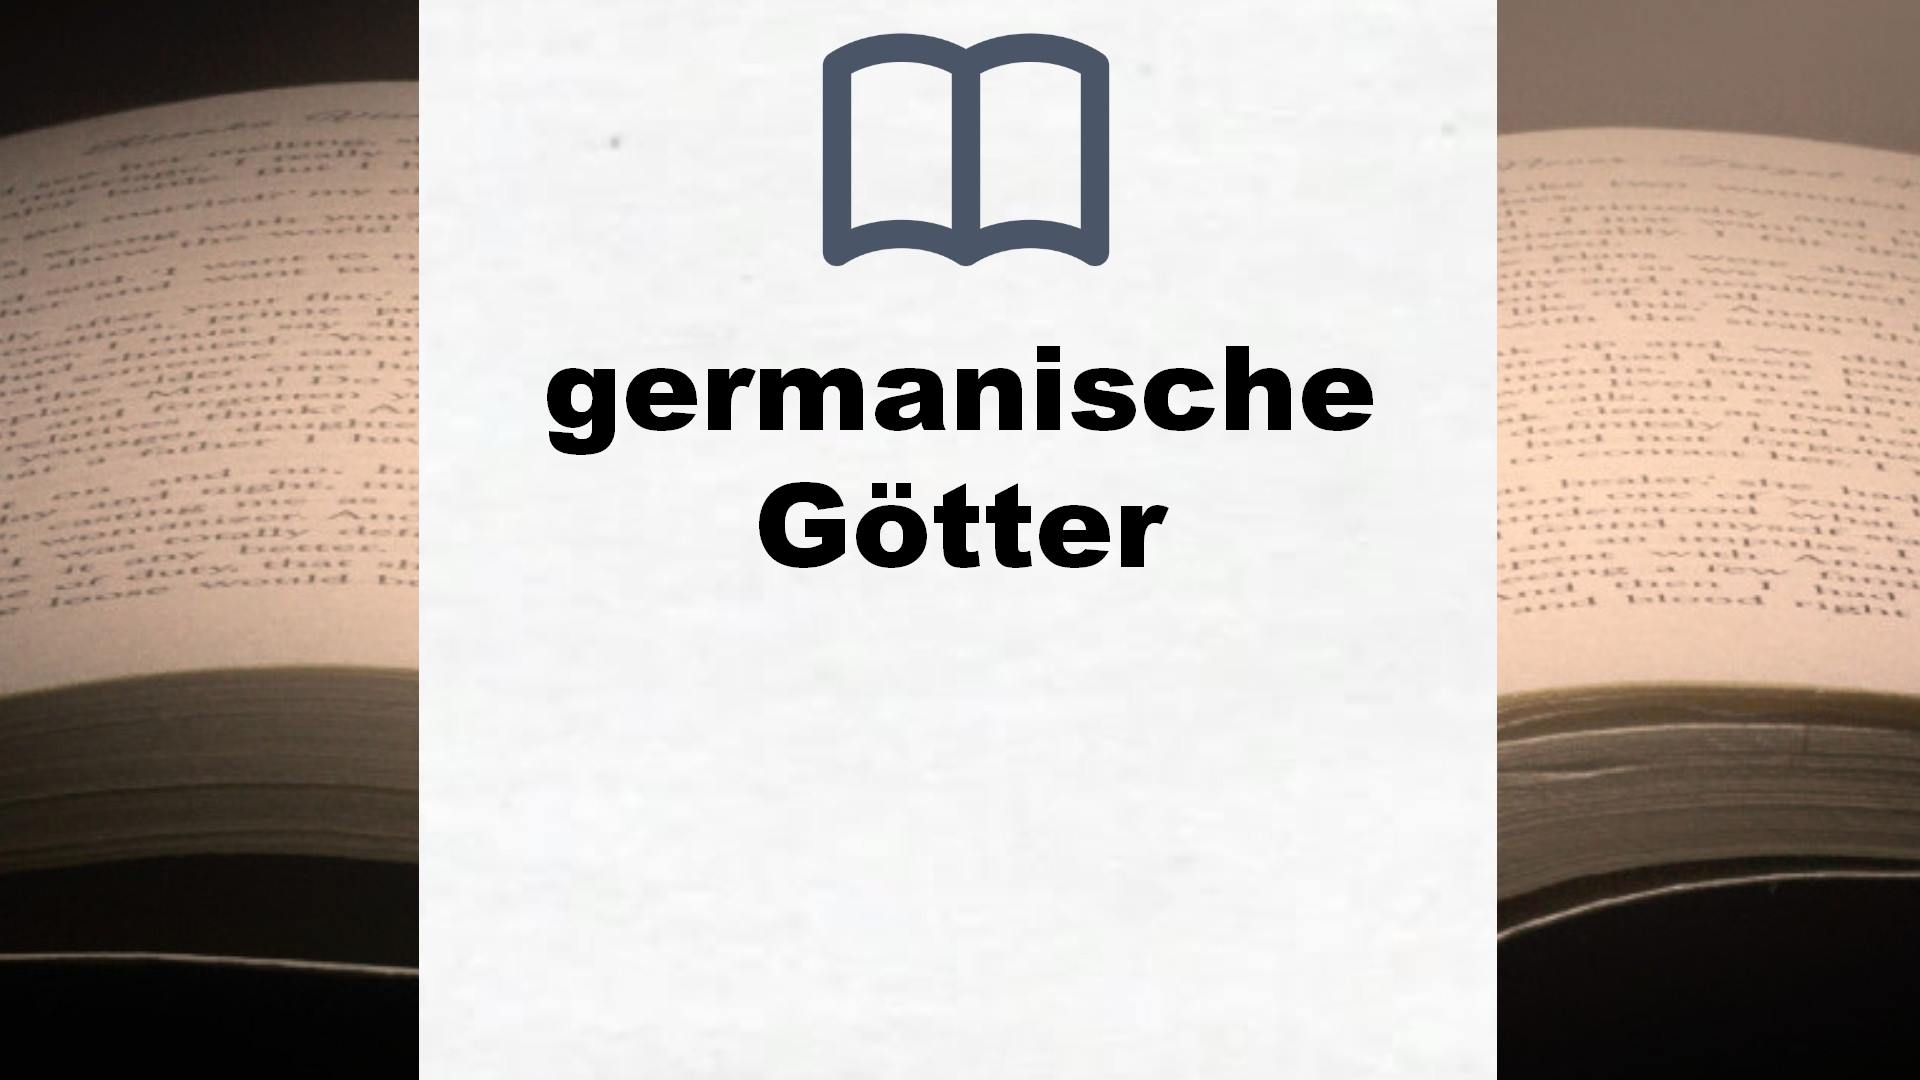 Bücher über germanische Götter